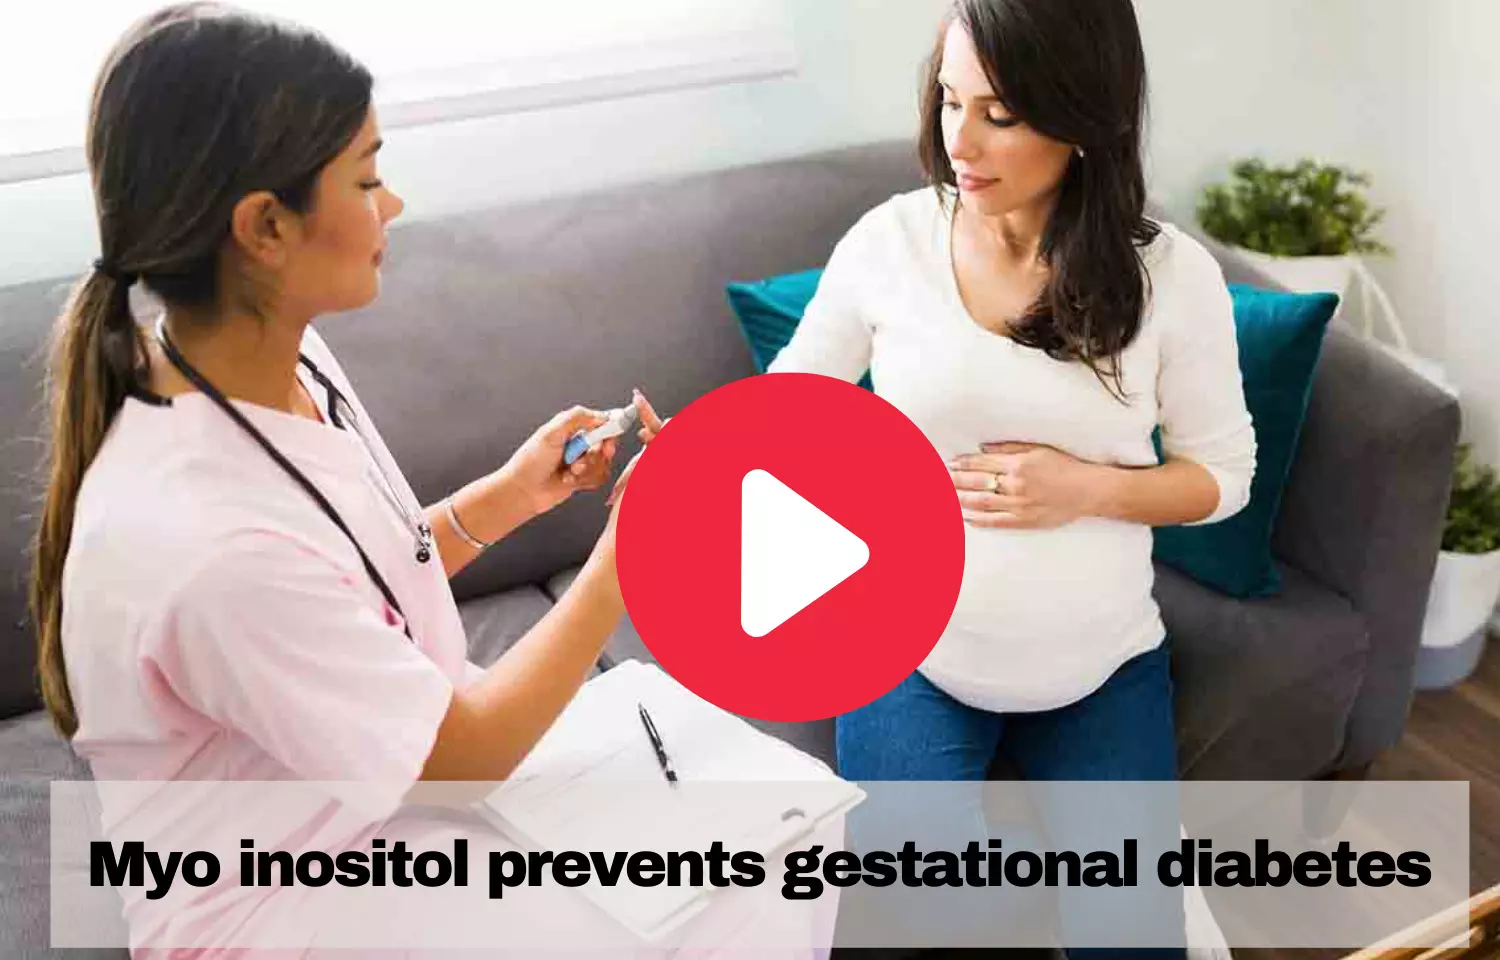 Myo inositol  effective in preventing gestational diabetes